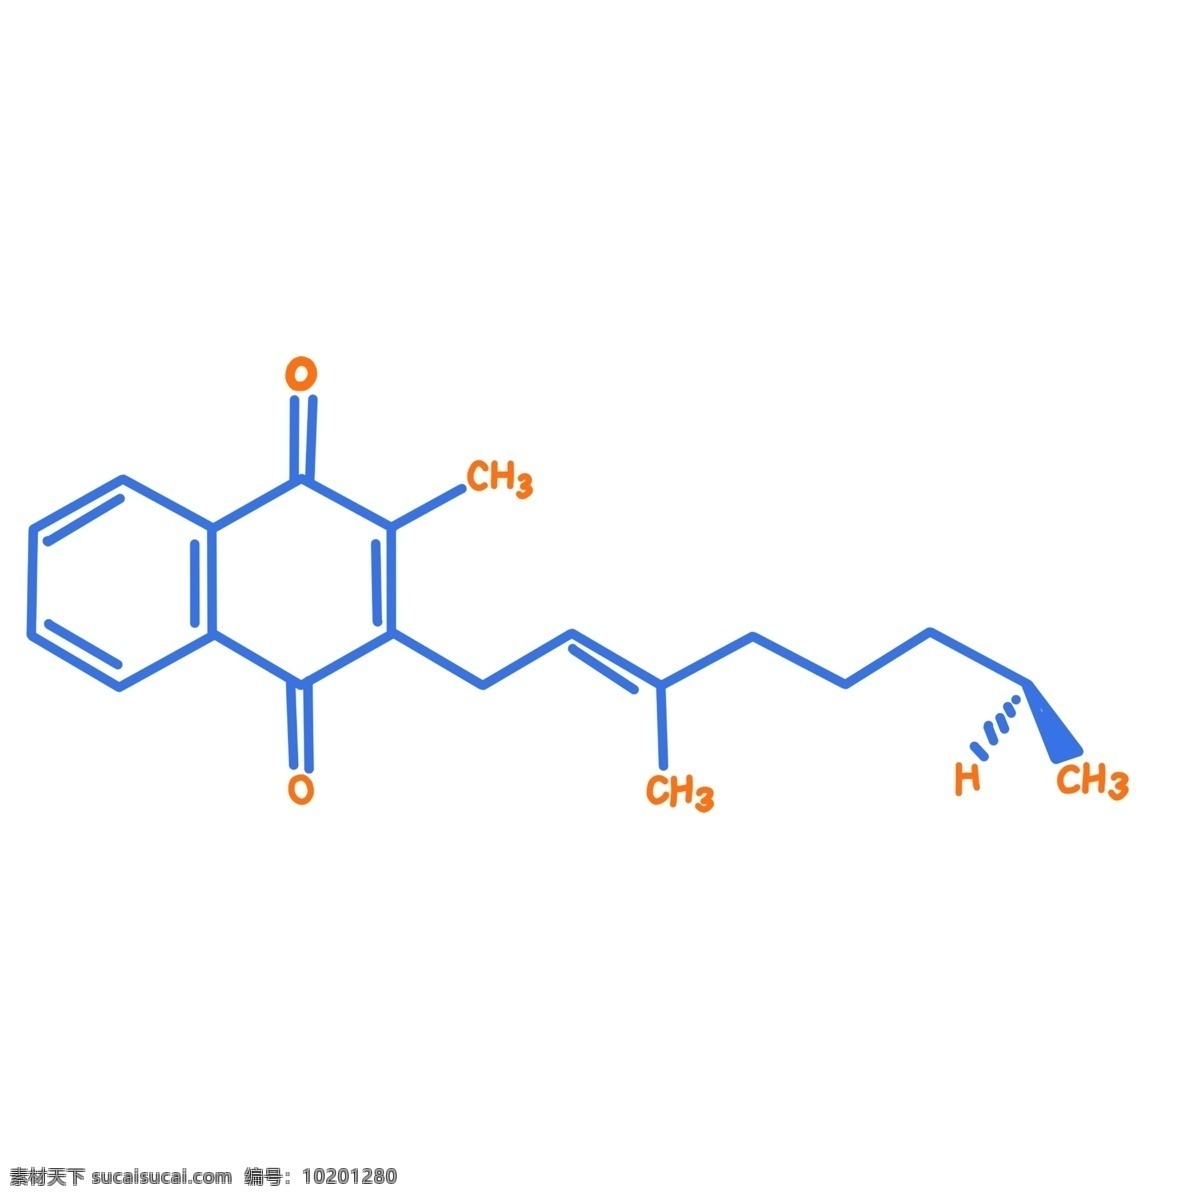 卡通 蓝色 化学 插图 蓝色分子 简约的分子 化学分子 橙色算数 数学方程式 化学方程式 微生物 生物学